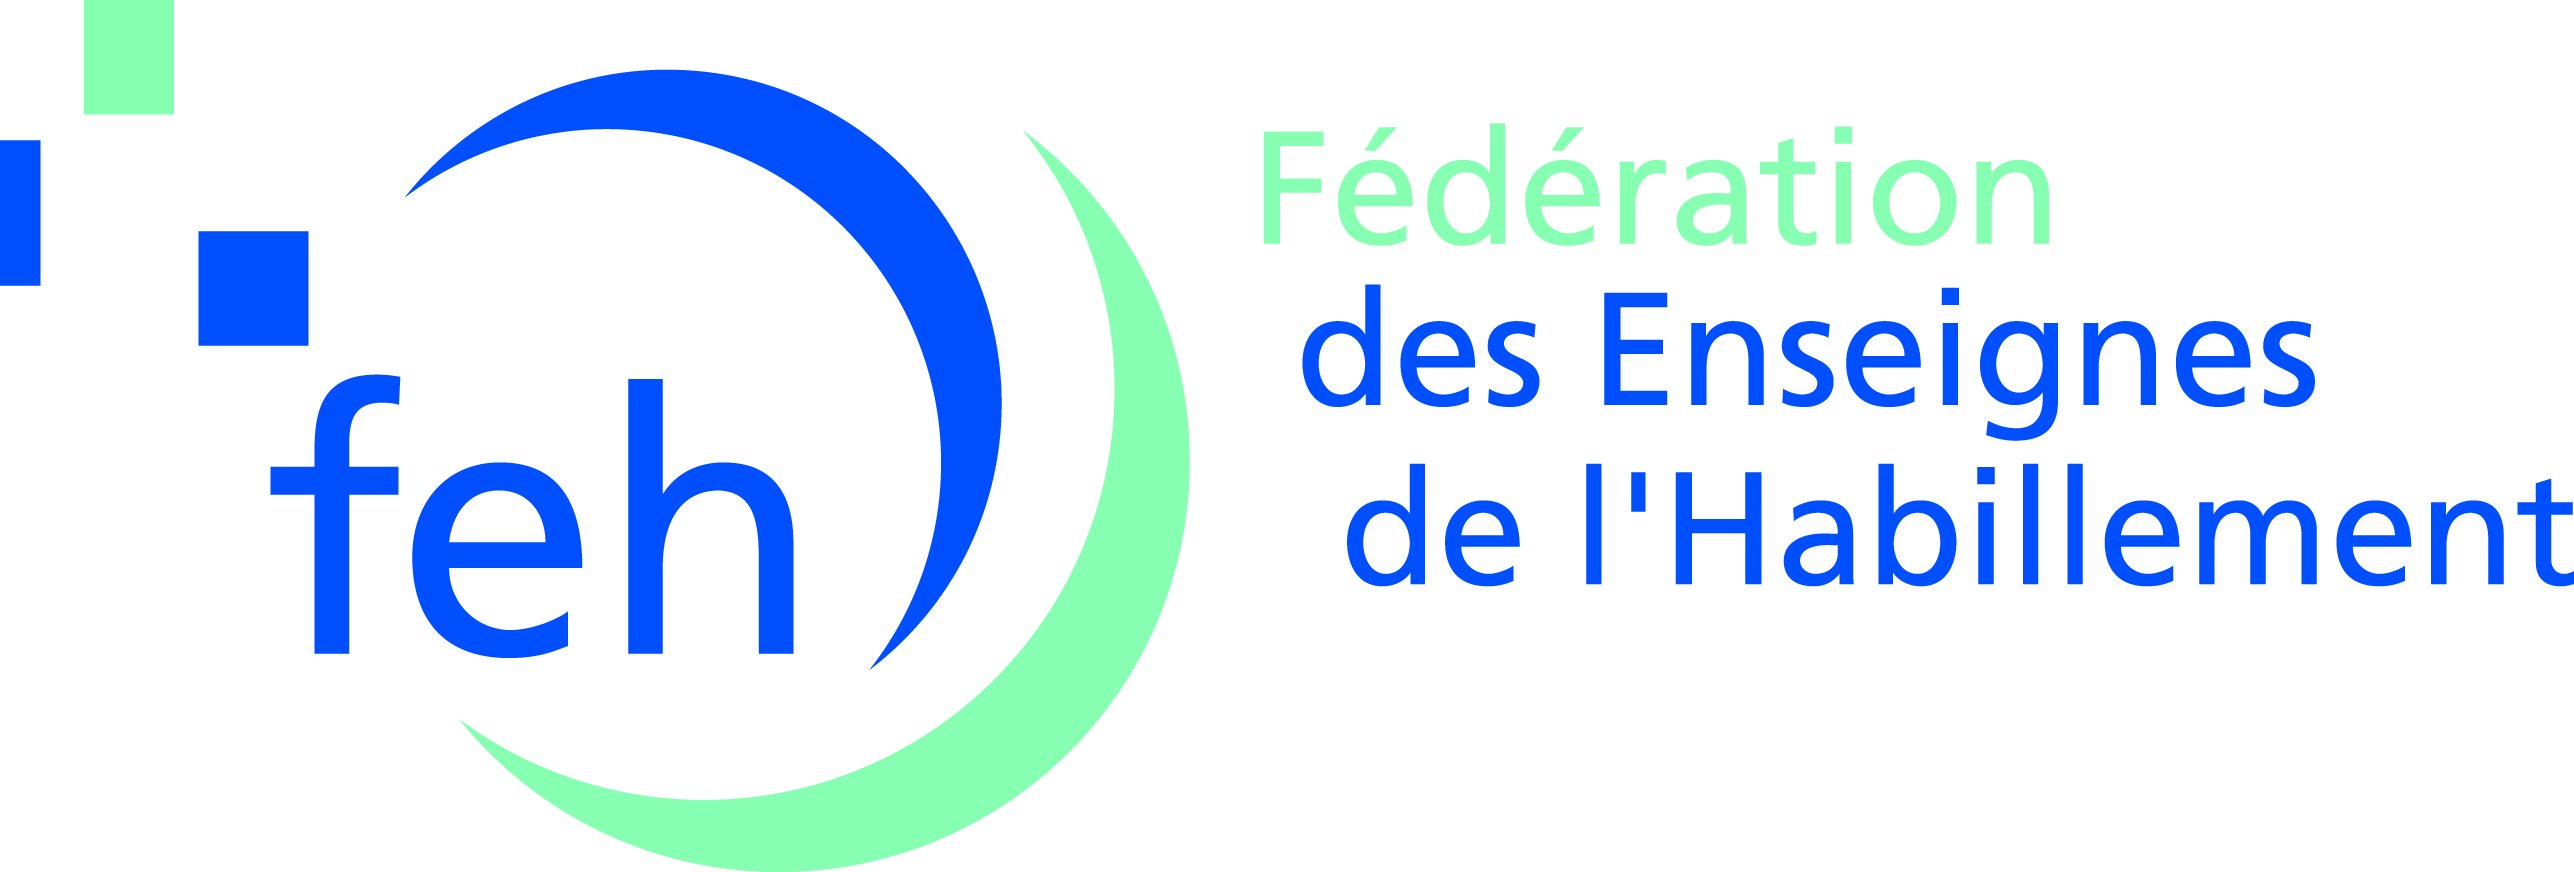 logo FEH Fédération des enseignes de l'habillement